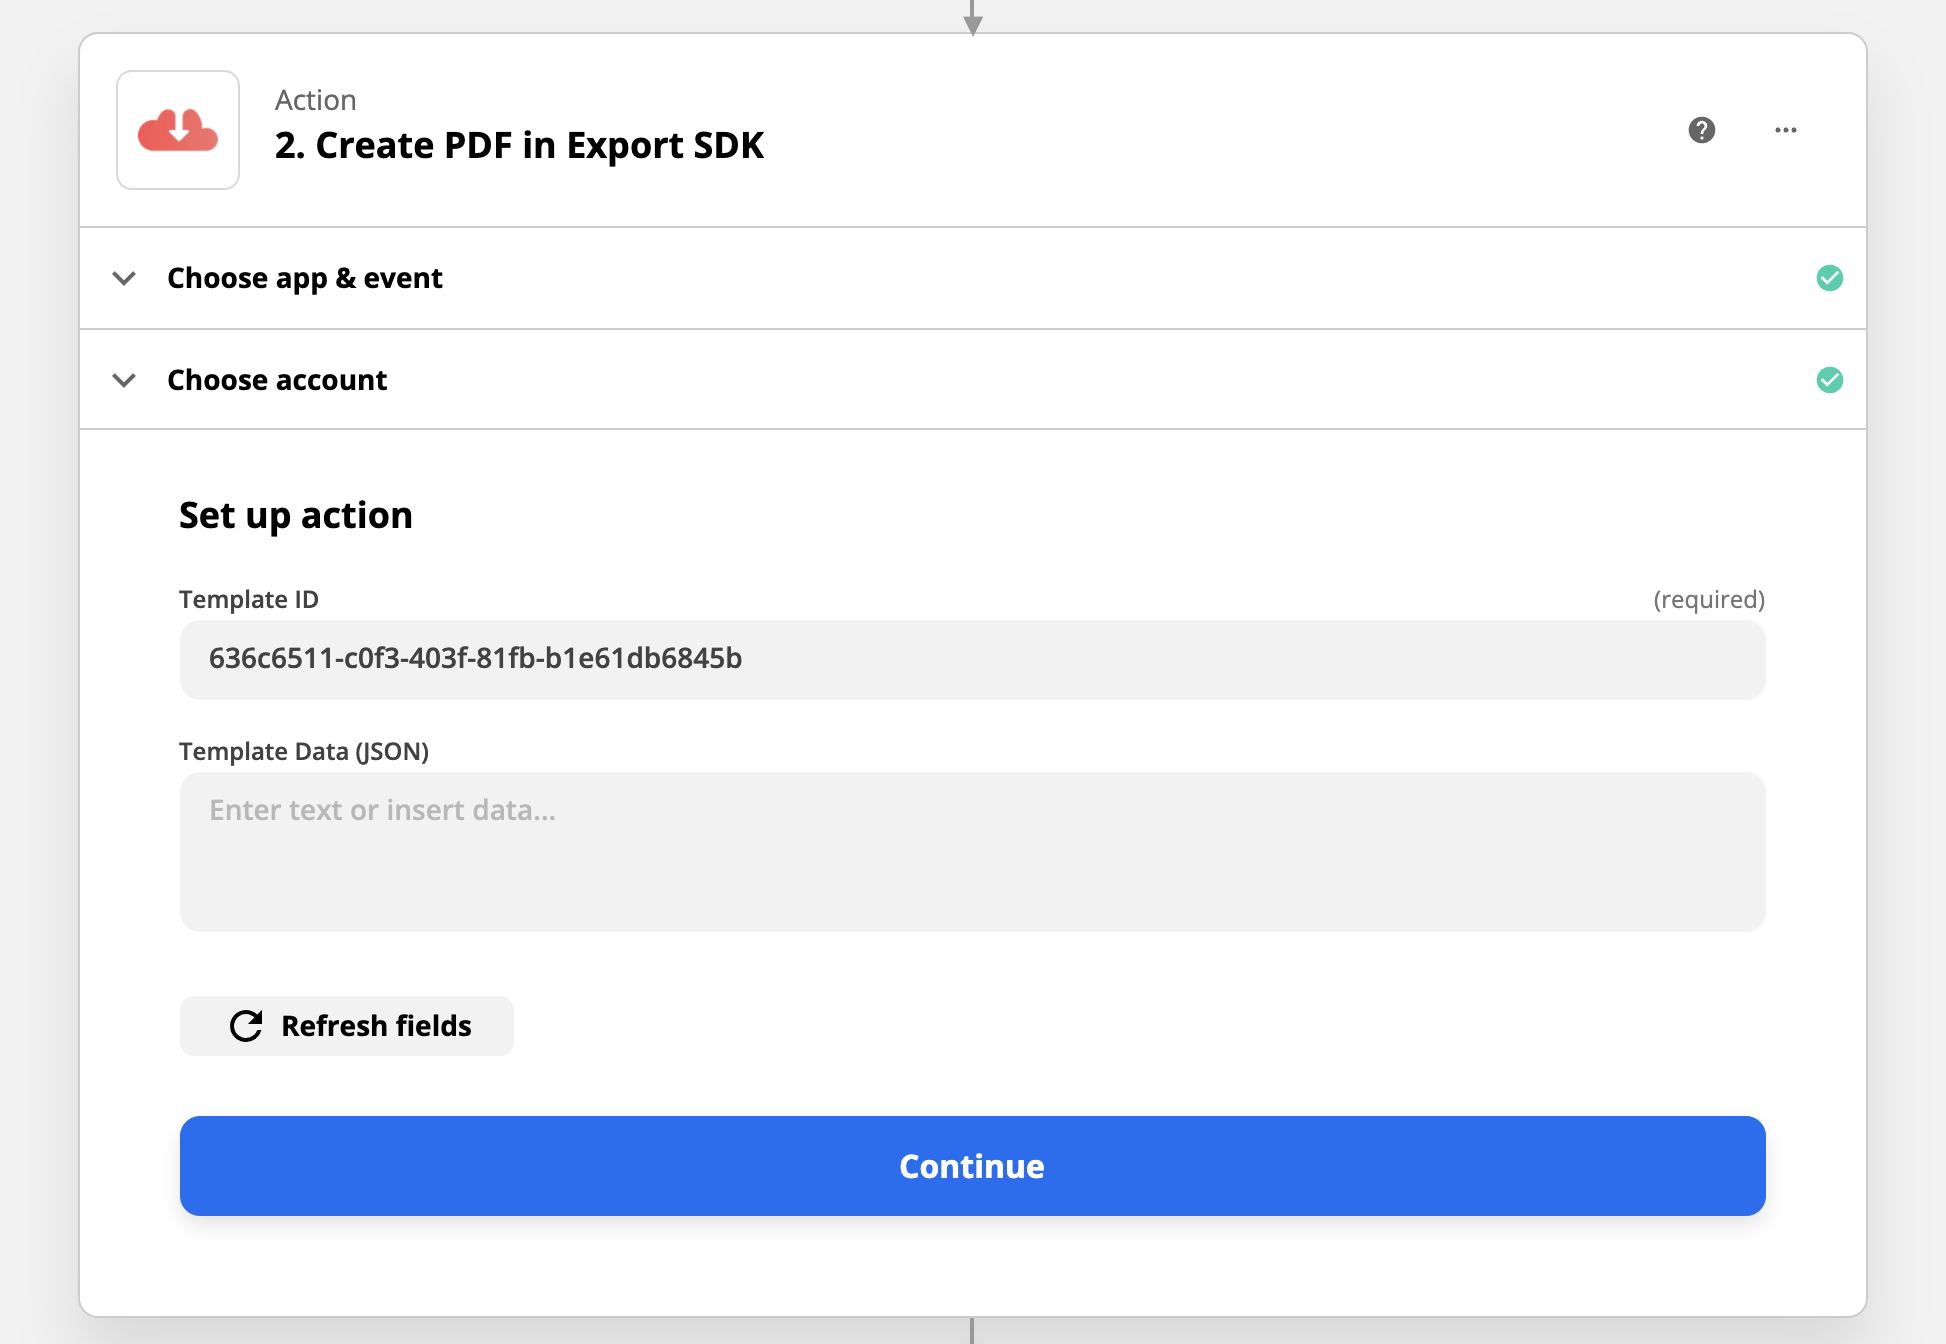 Screenshot of Export SDK template ID input into Zapp action form